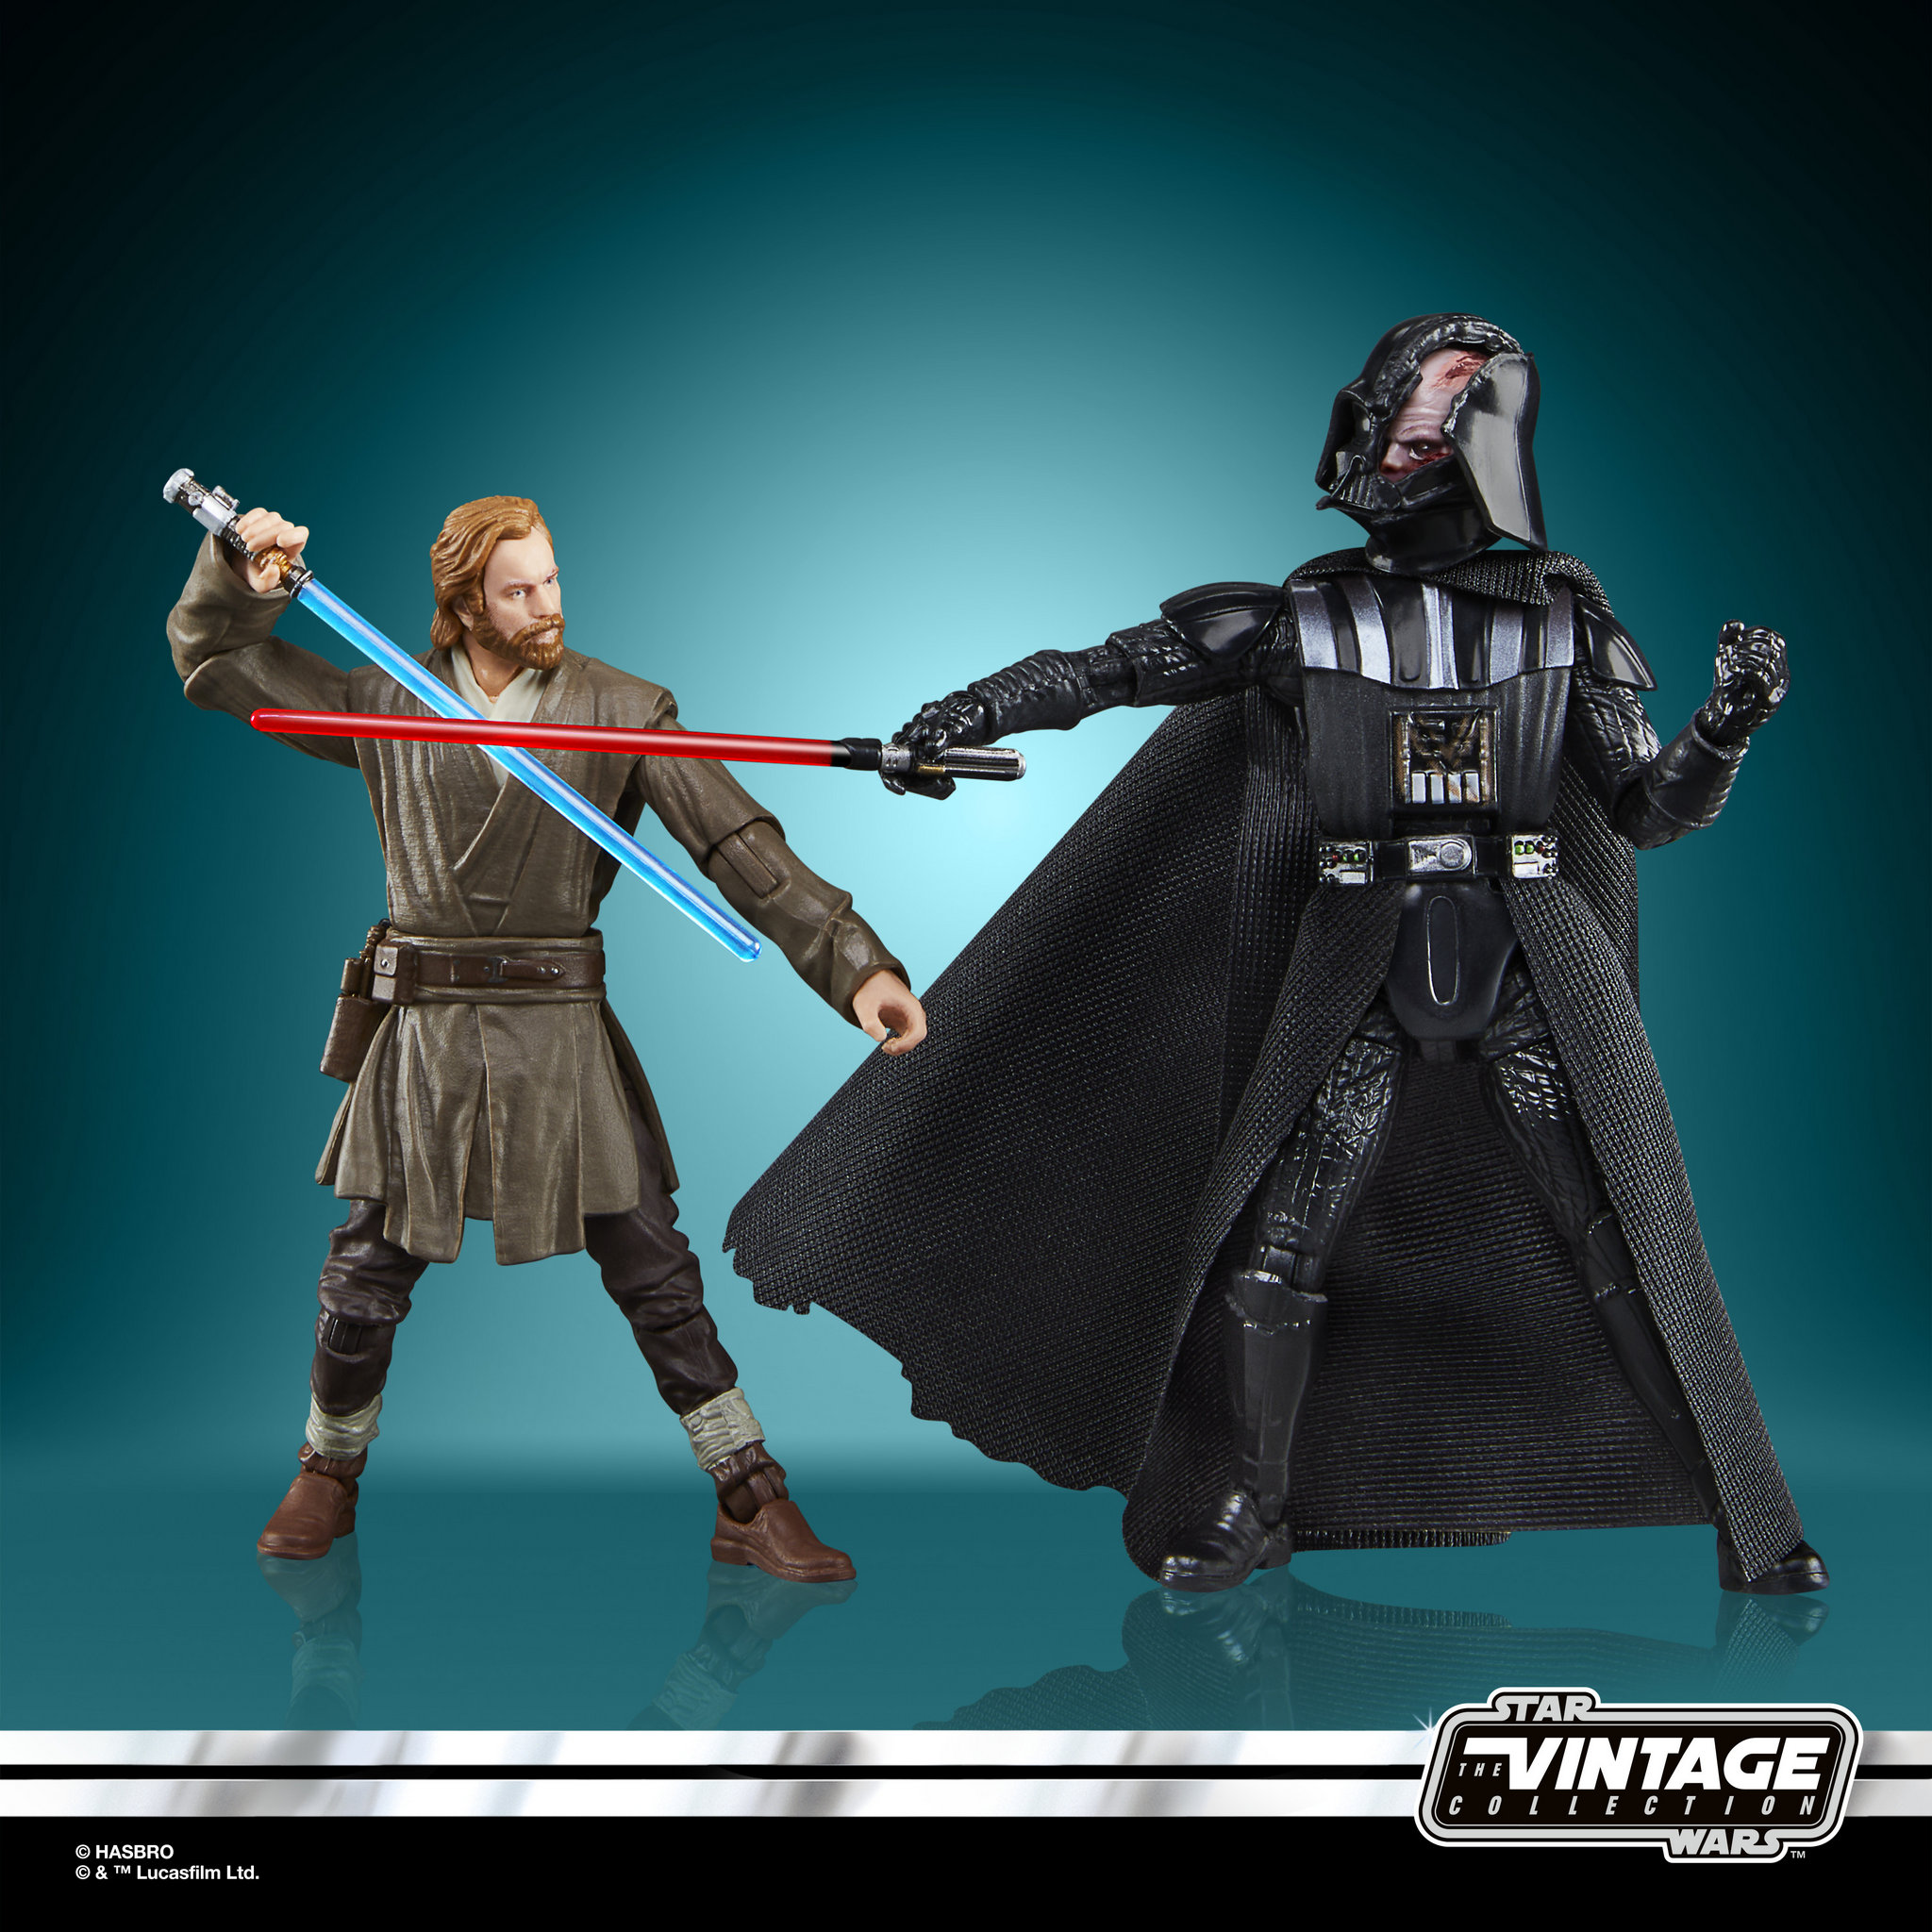 Star Wars Vintage Collection: Obi-Wan vs. Darth Vader revealed